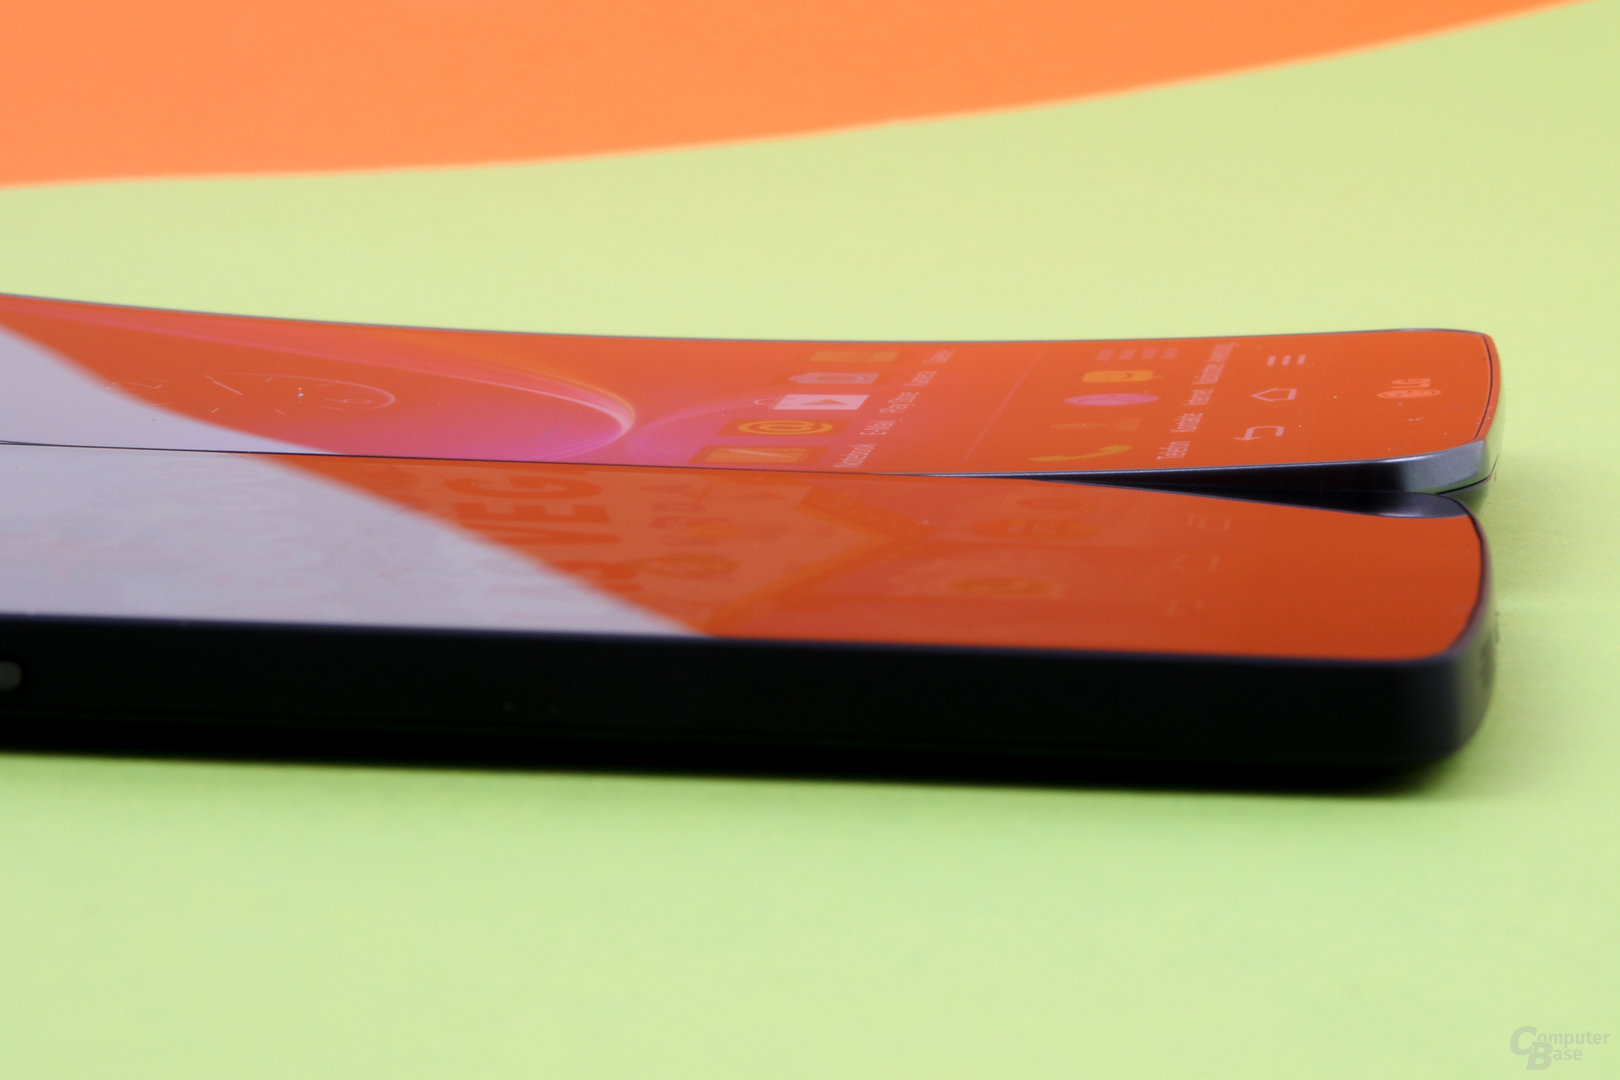 Google Nexus 5 & G Flex